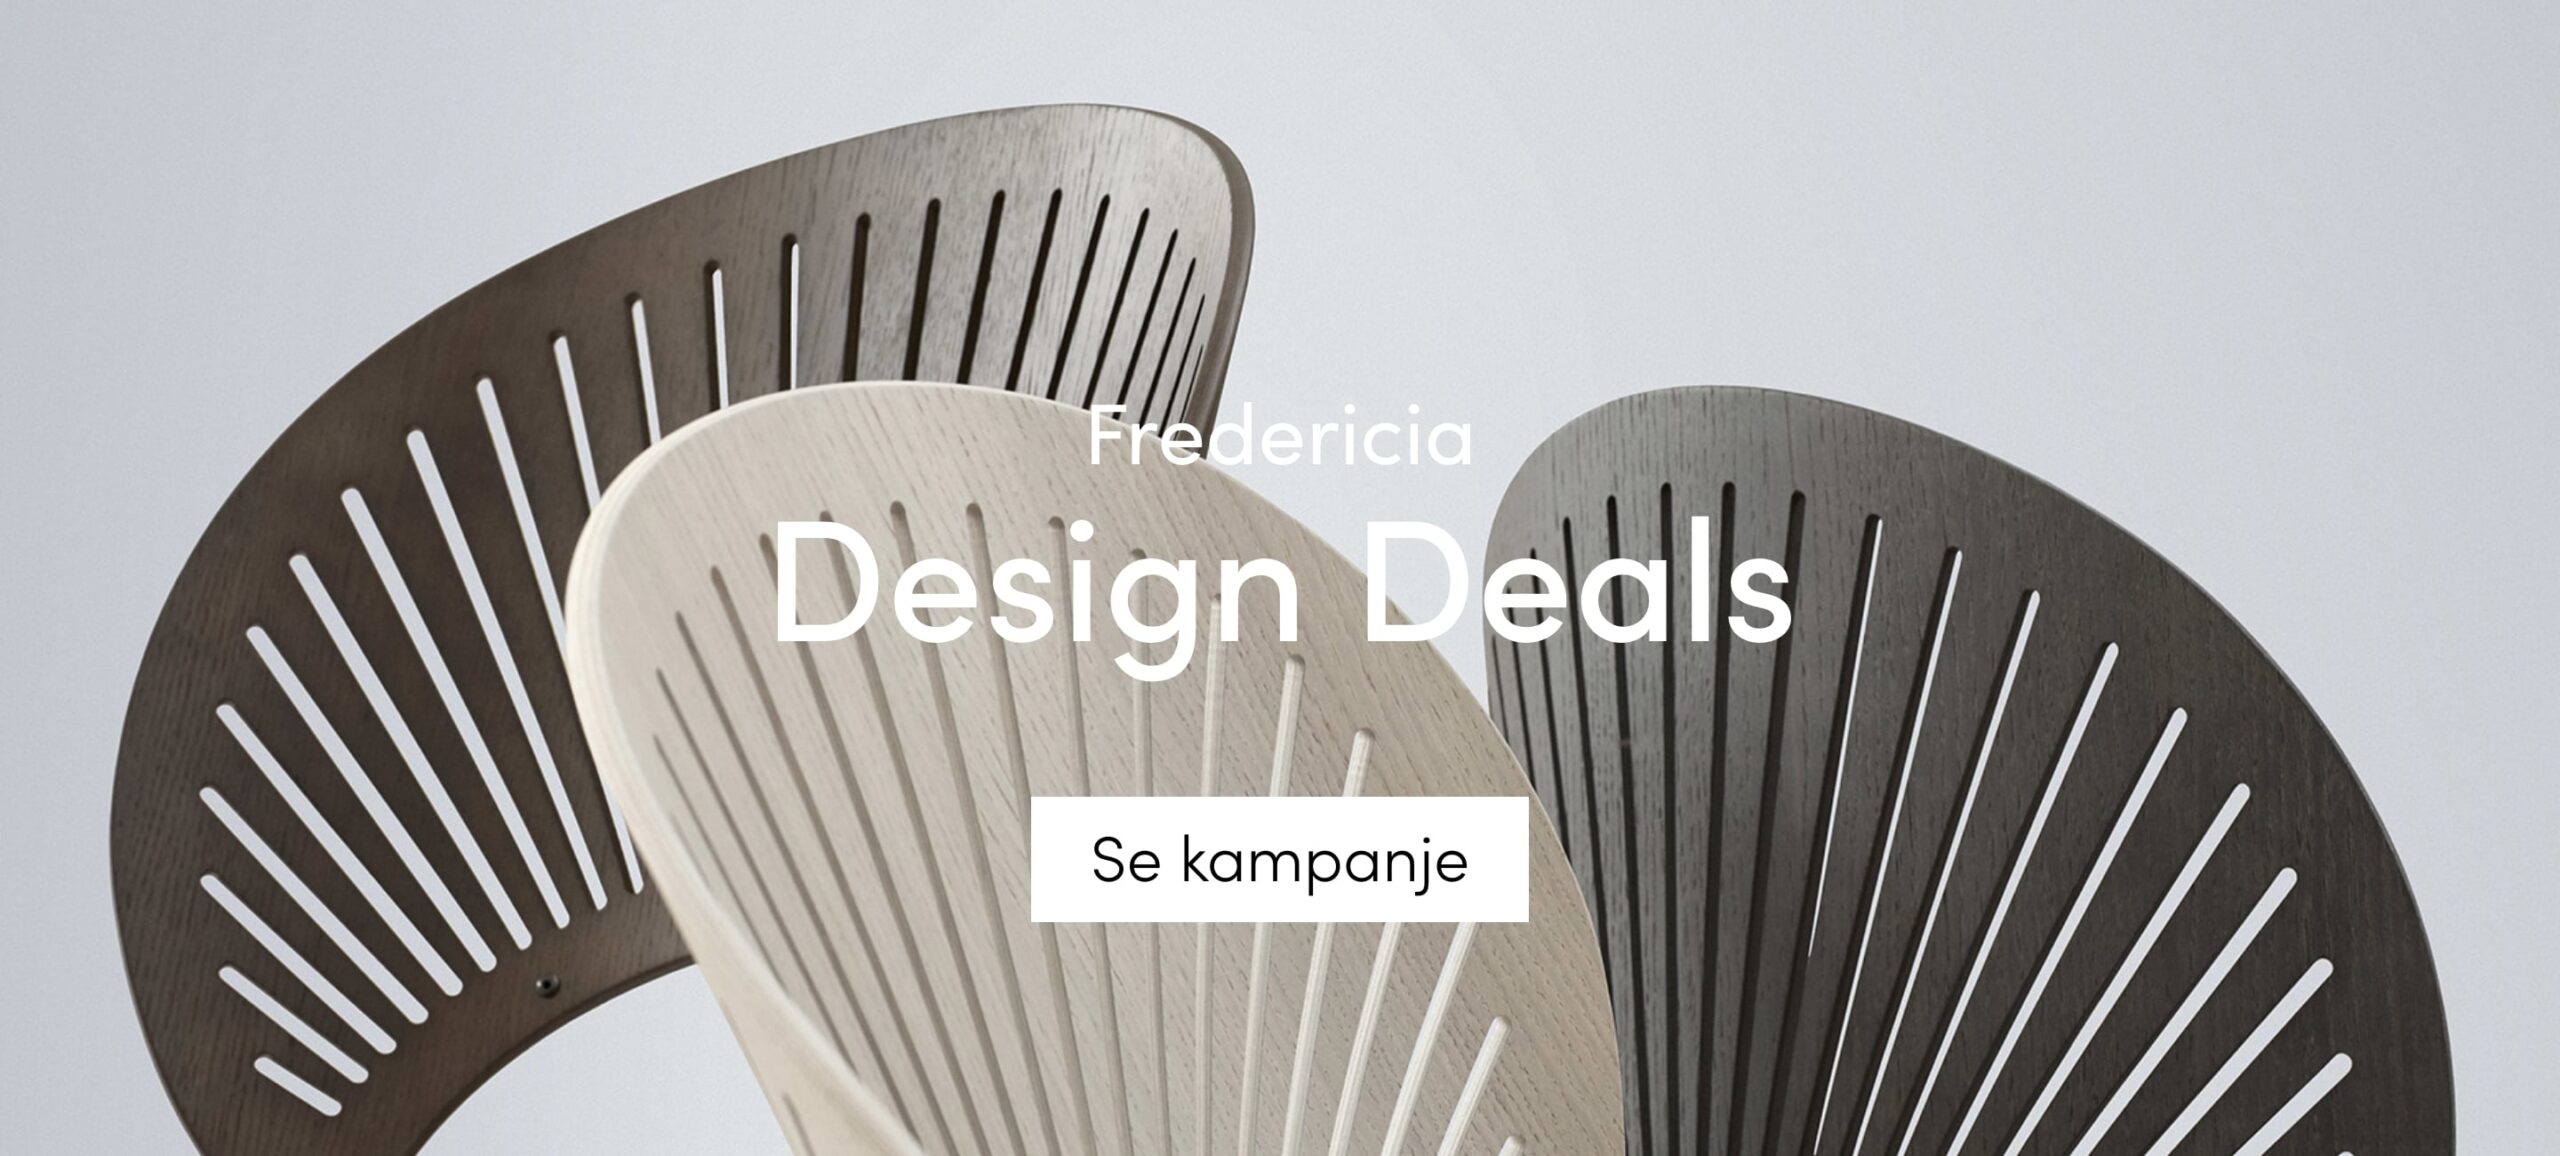 Fredericia design deals